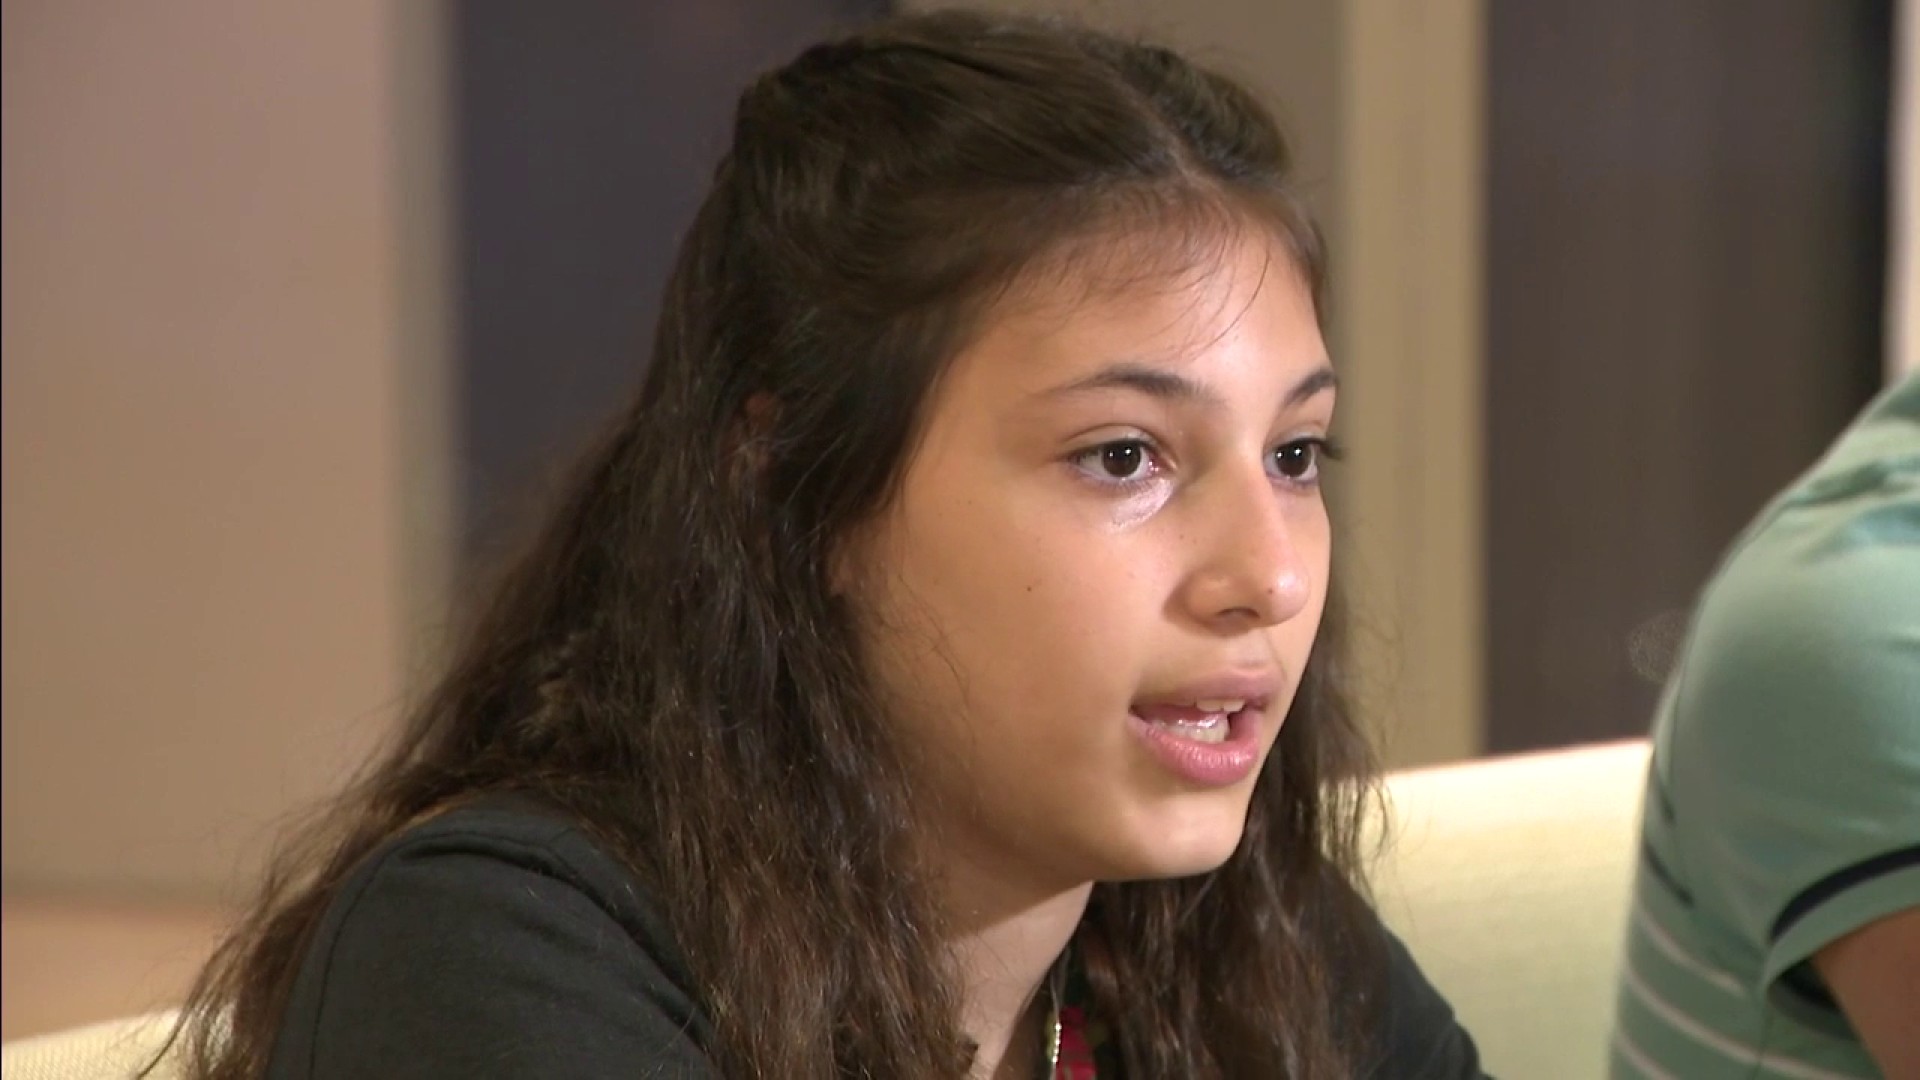 Hija de desaparecido en Surfside contó cómo mantener una actitud positiva a través de la fe